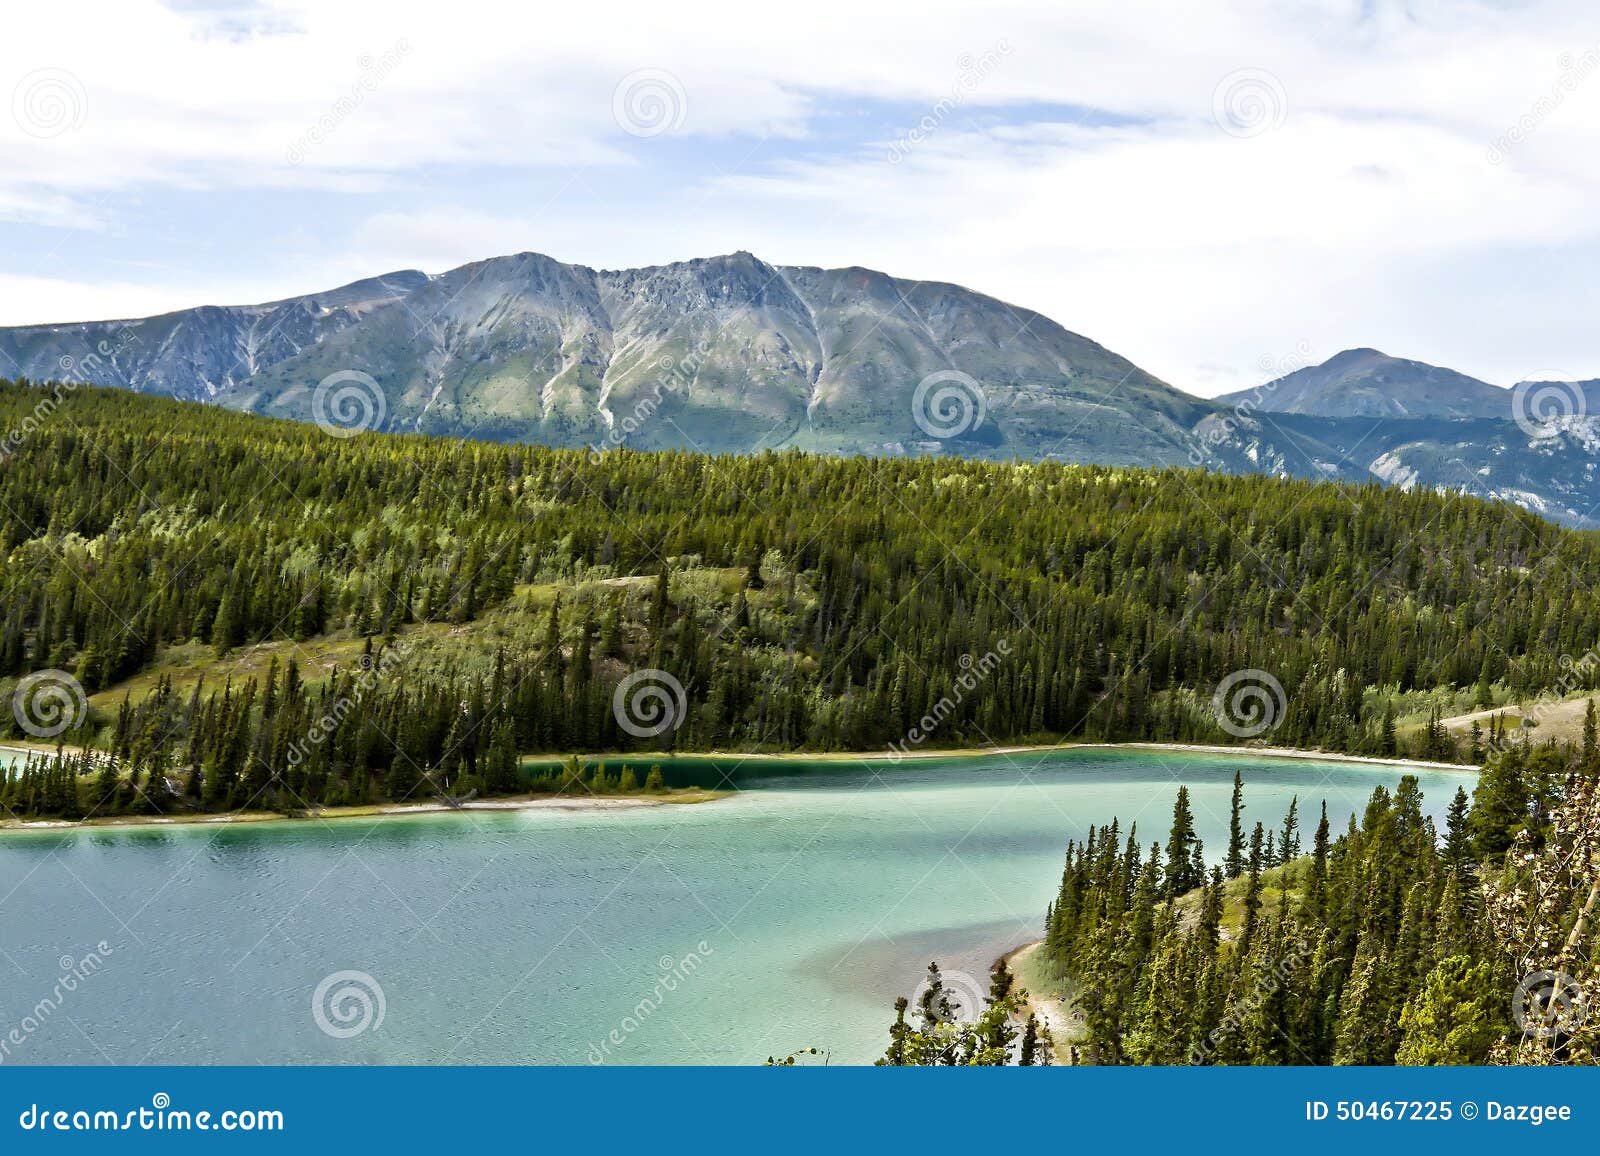 the emerald lake in yukon in canada